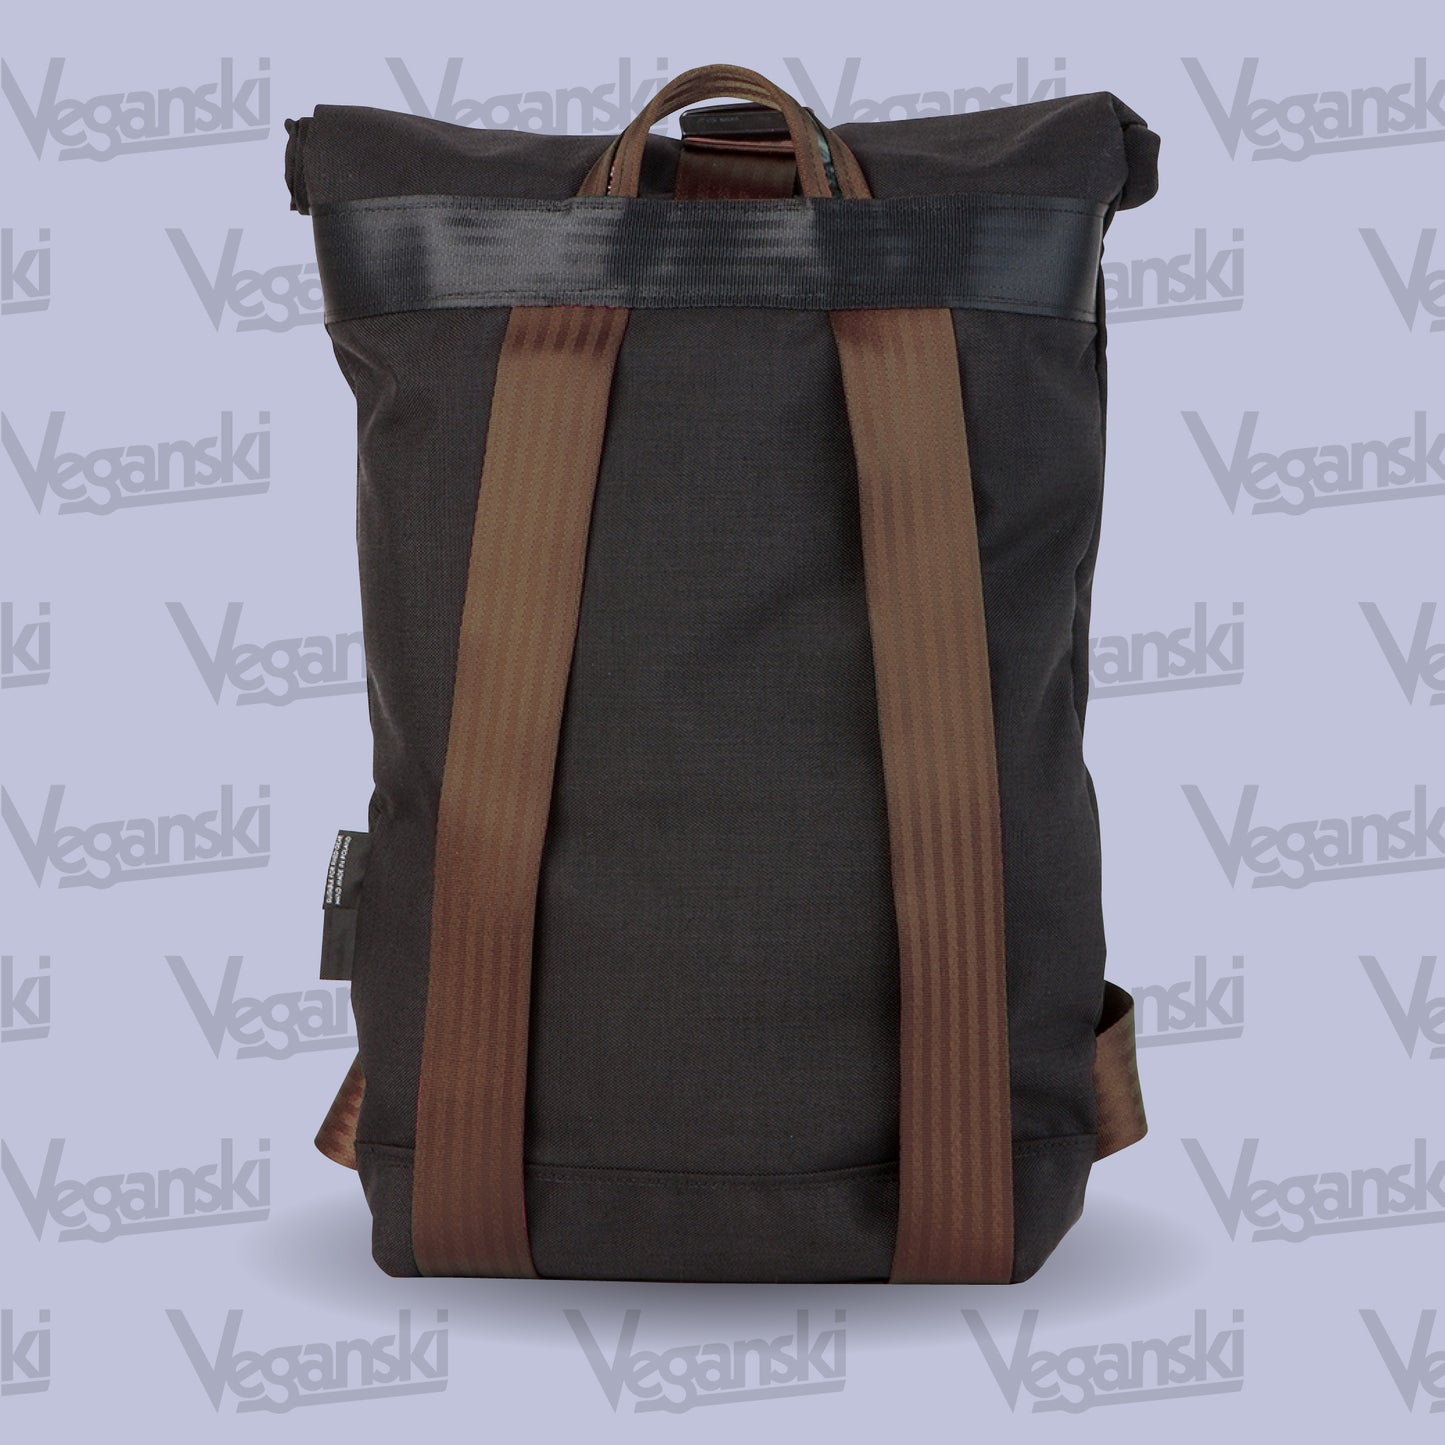 Veganski Light Bag - Brown